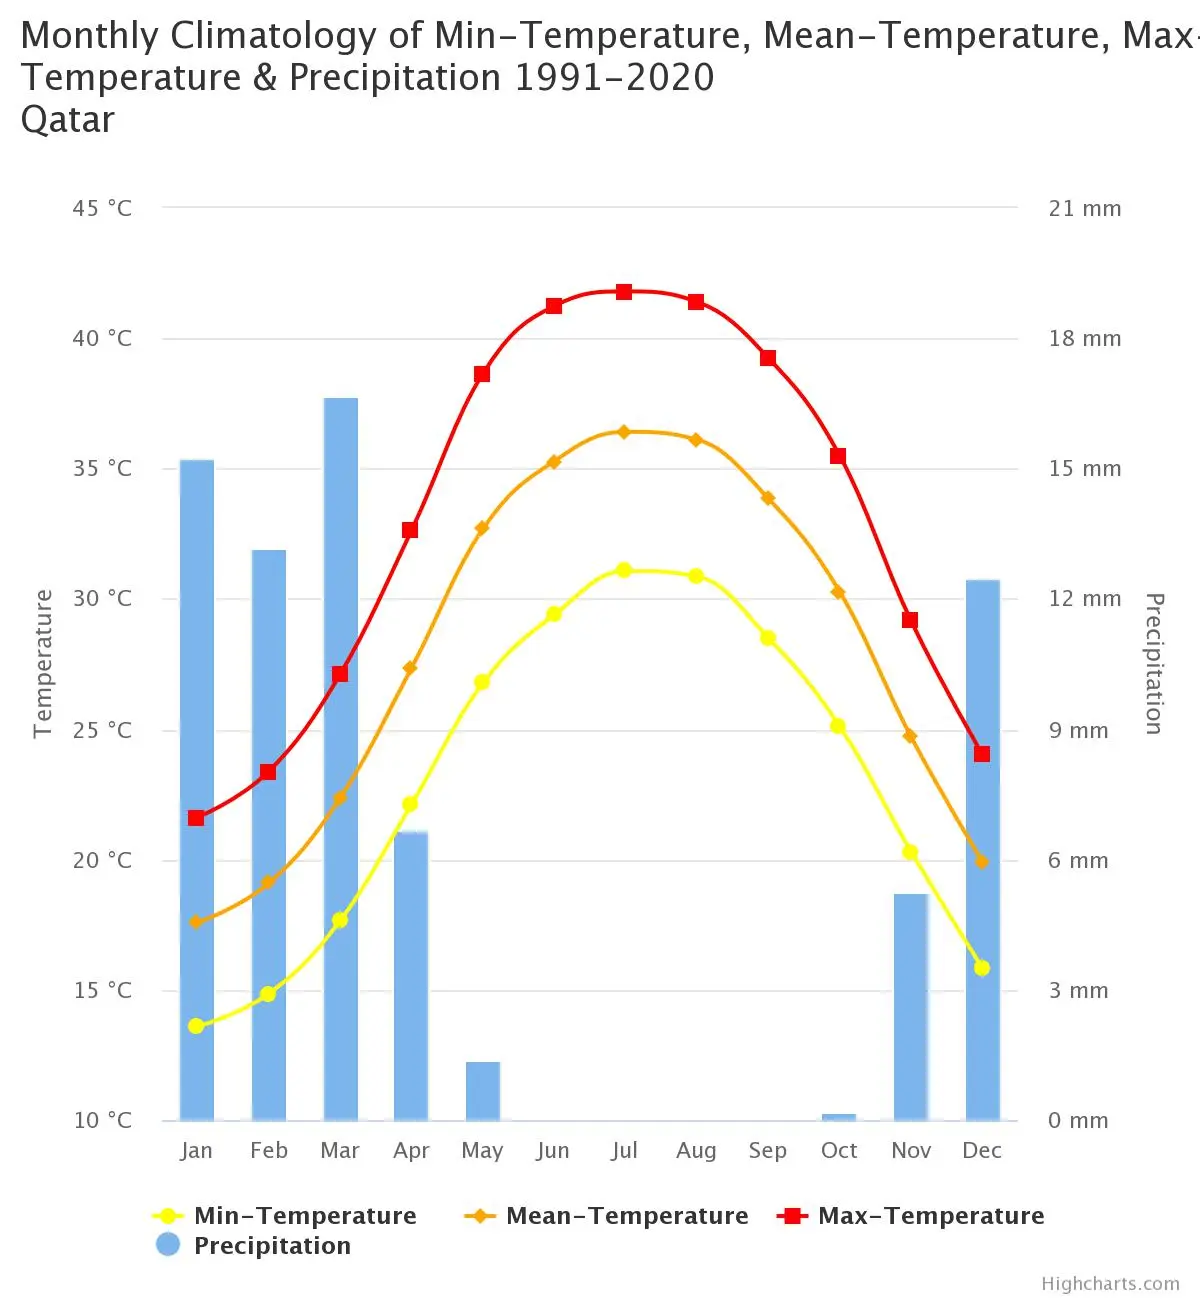 Qatar temperatre averages 1991-2020